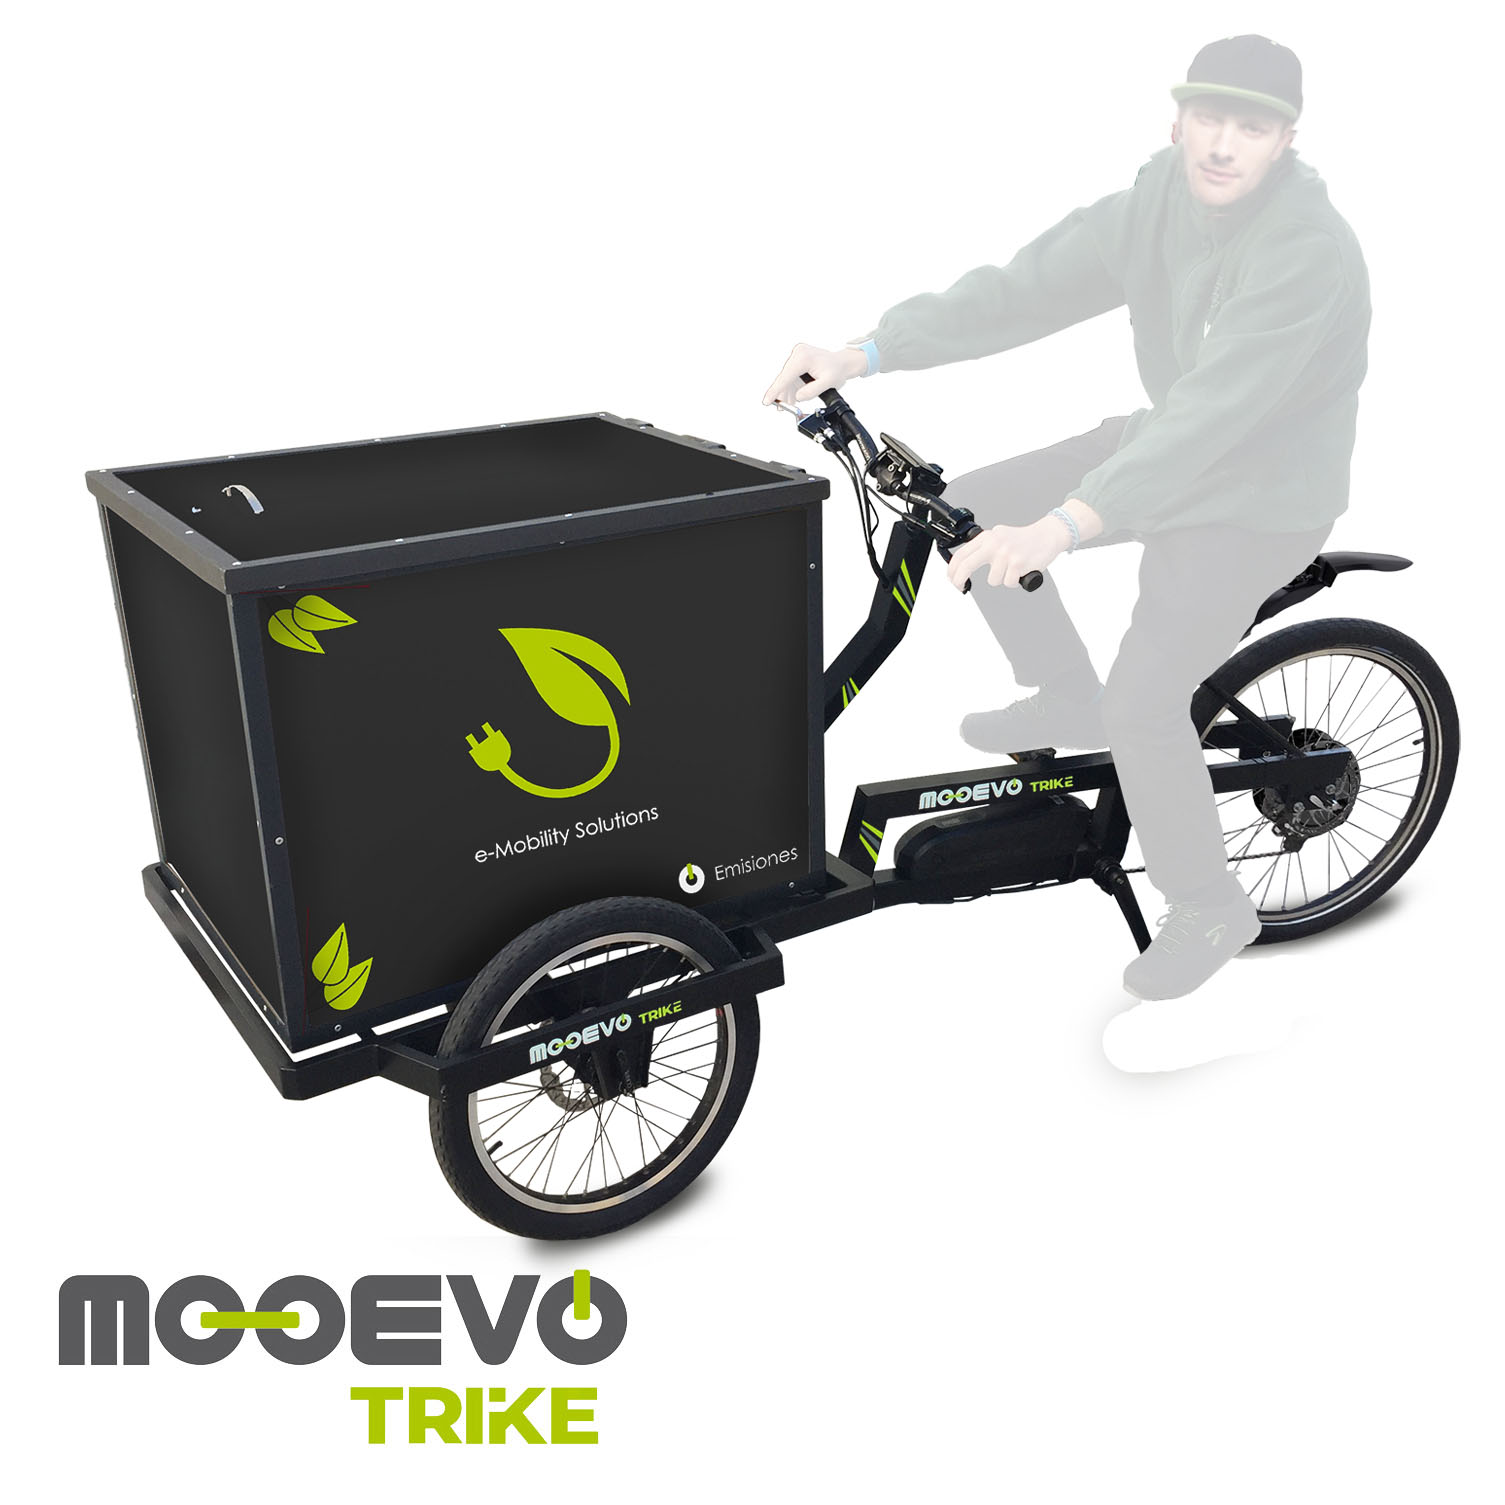 Bicicletas eléctricas de carga para el reparto urbano